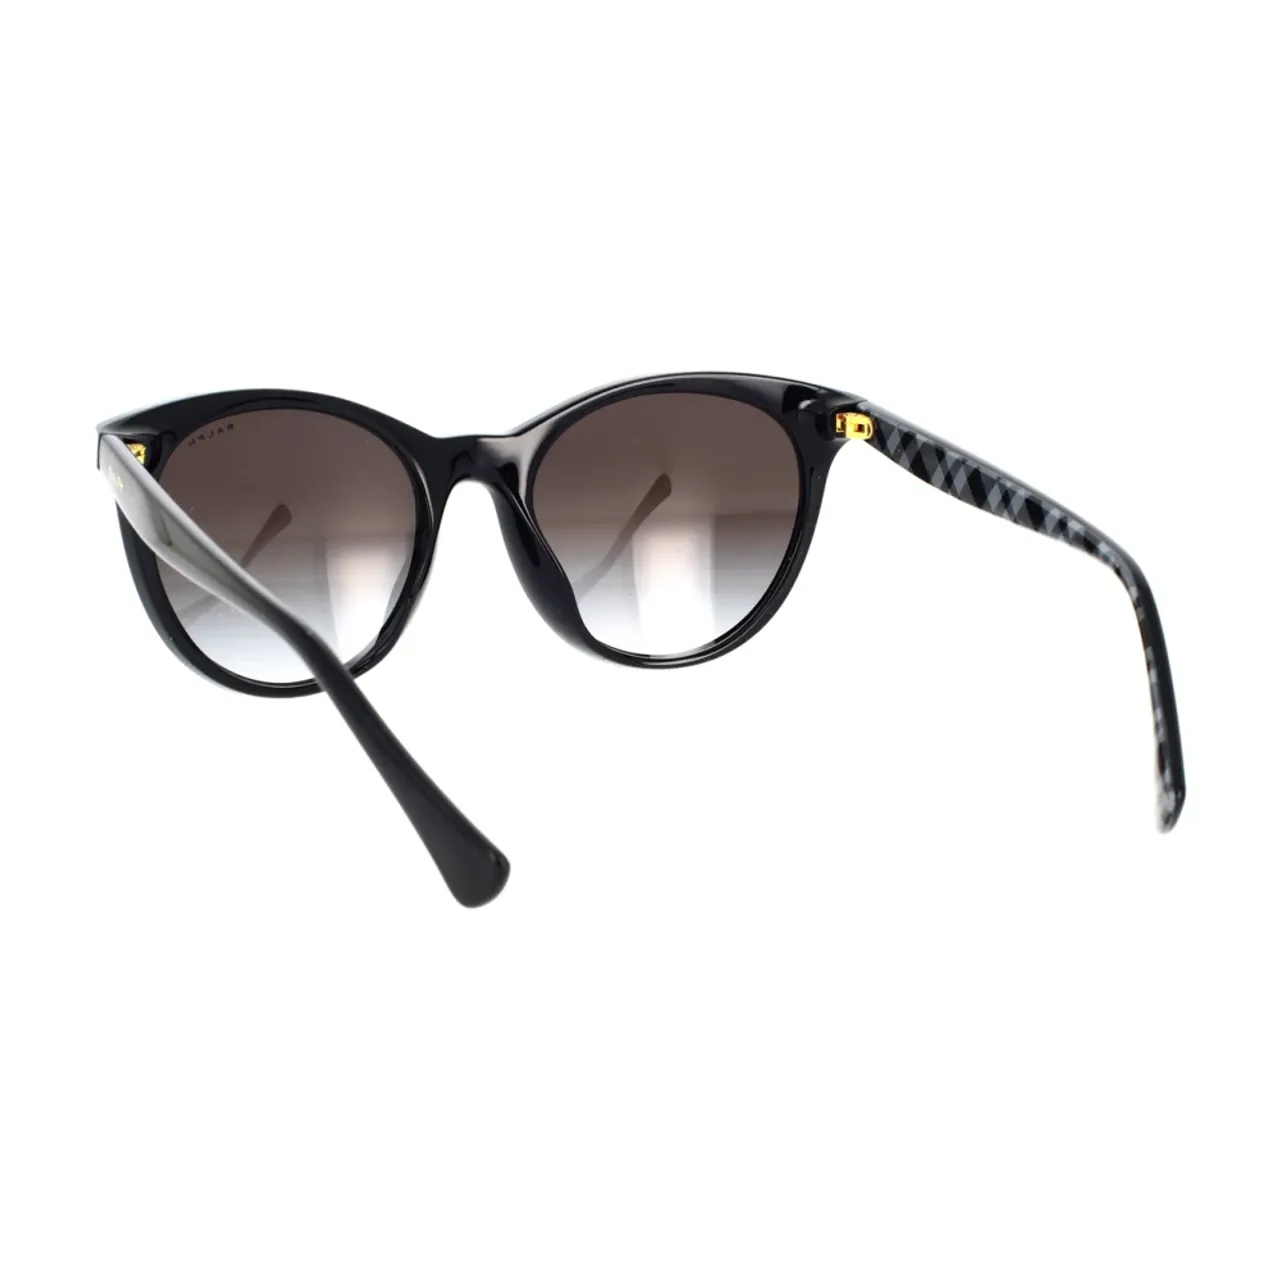 Sonnenbrille mit rundem Design und elegantem schwarzen Rahmen Ralph Lauren